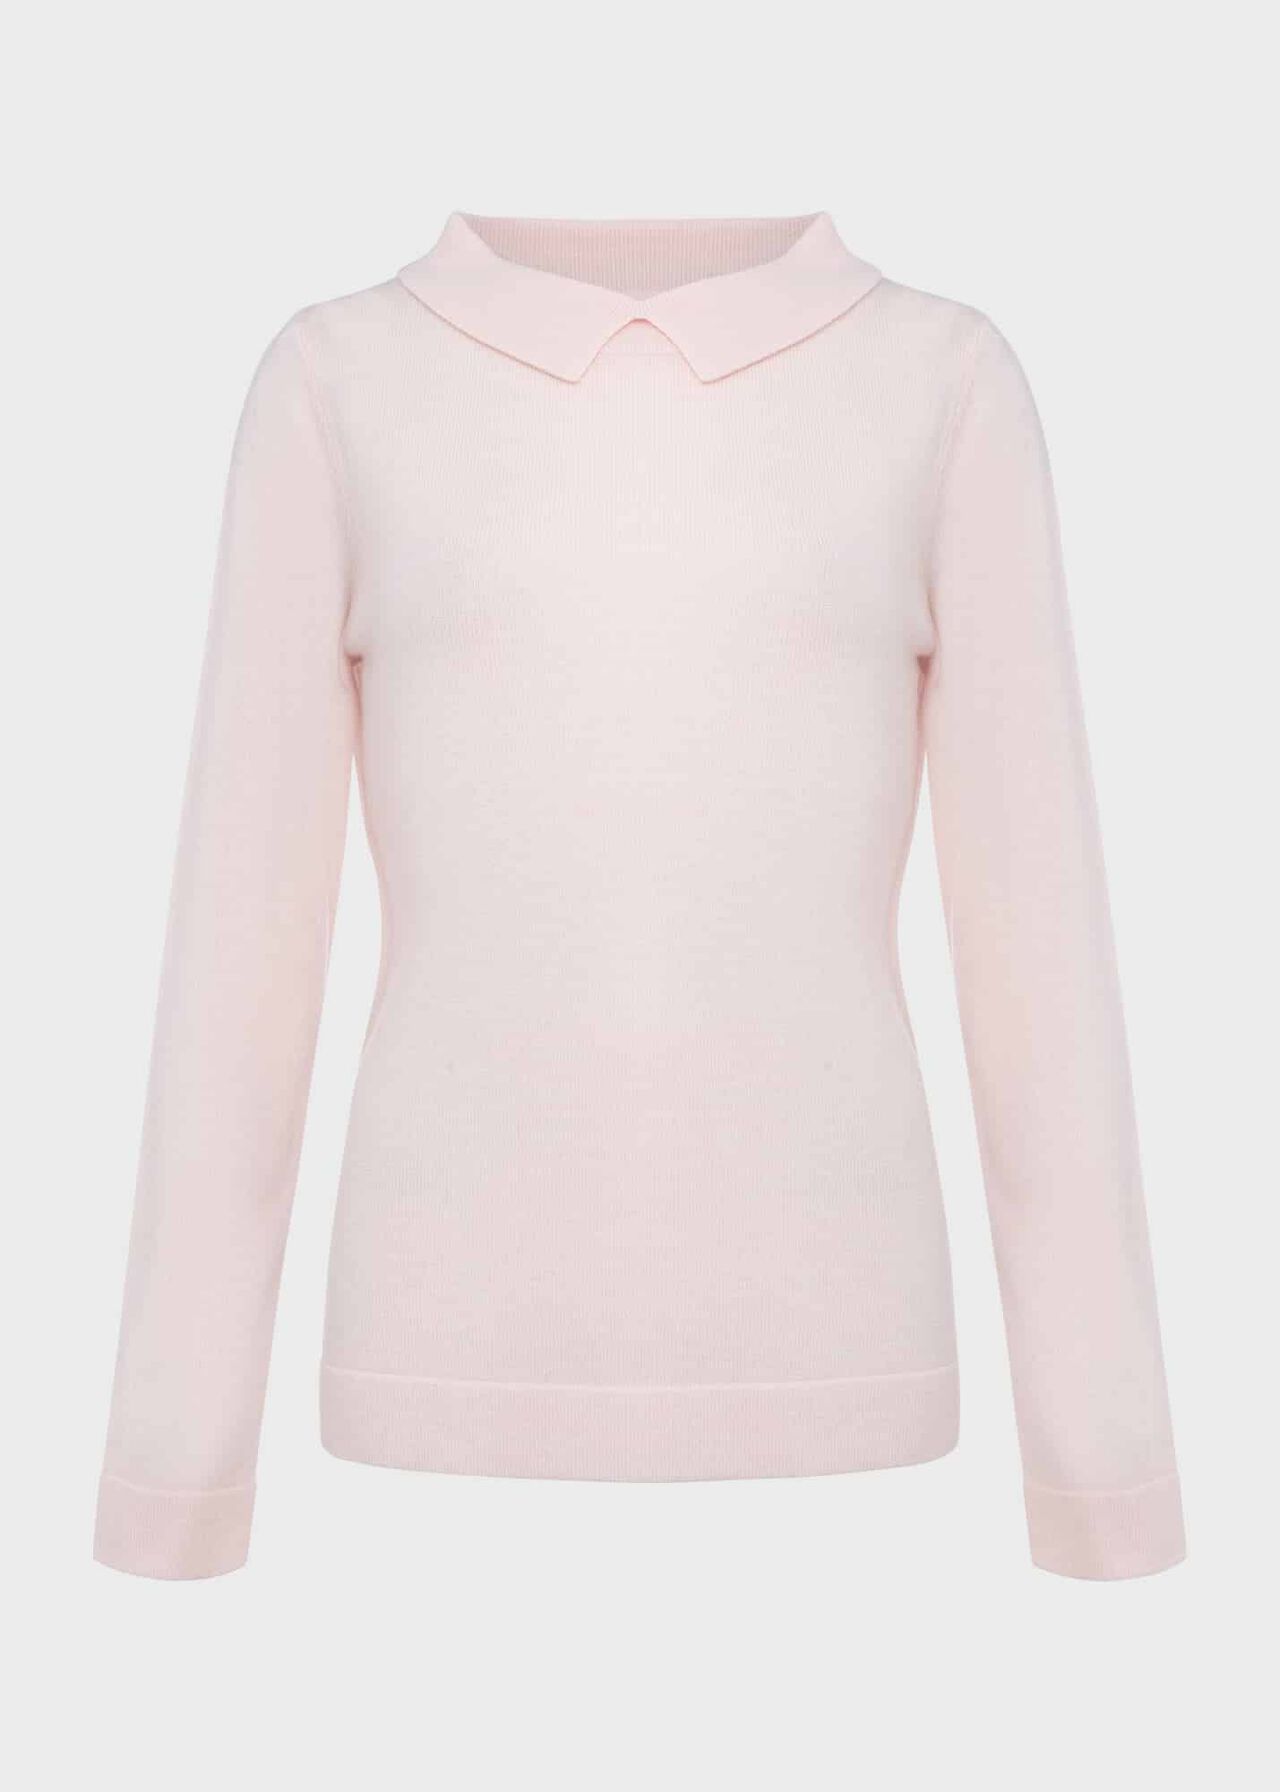 Priya Wool Cashmere Sweater, Sweet Pink, hi-res